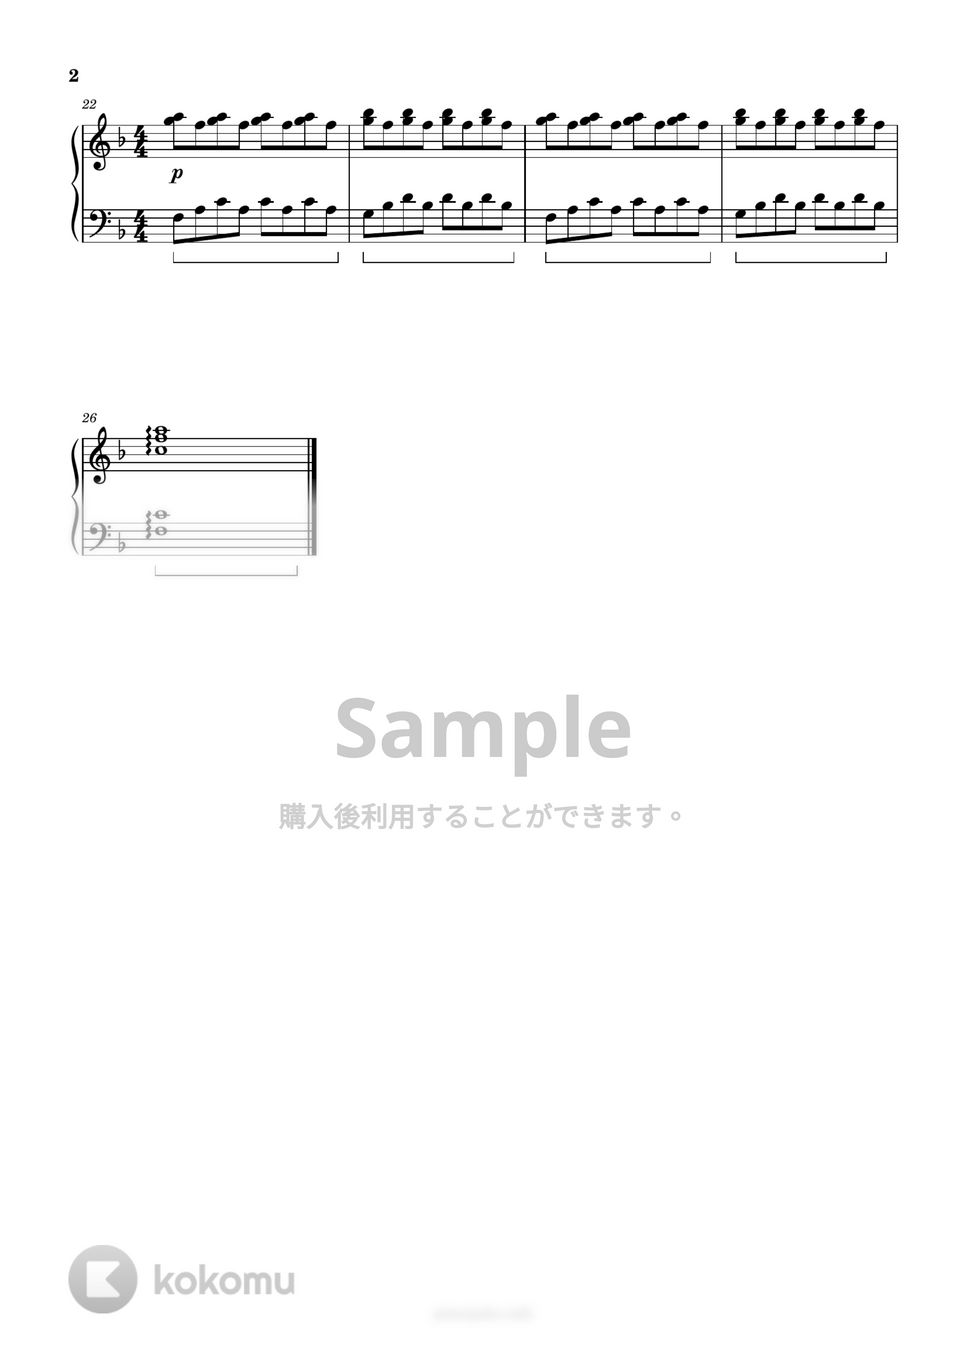 イルカ - なごり雪 (簡単楽譜) by ピアノ塾